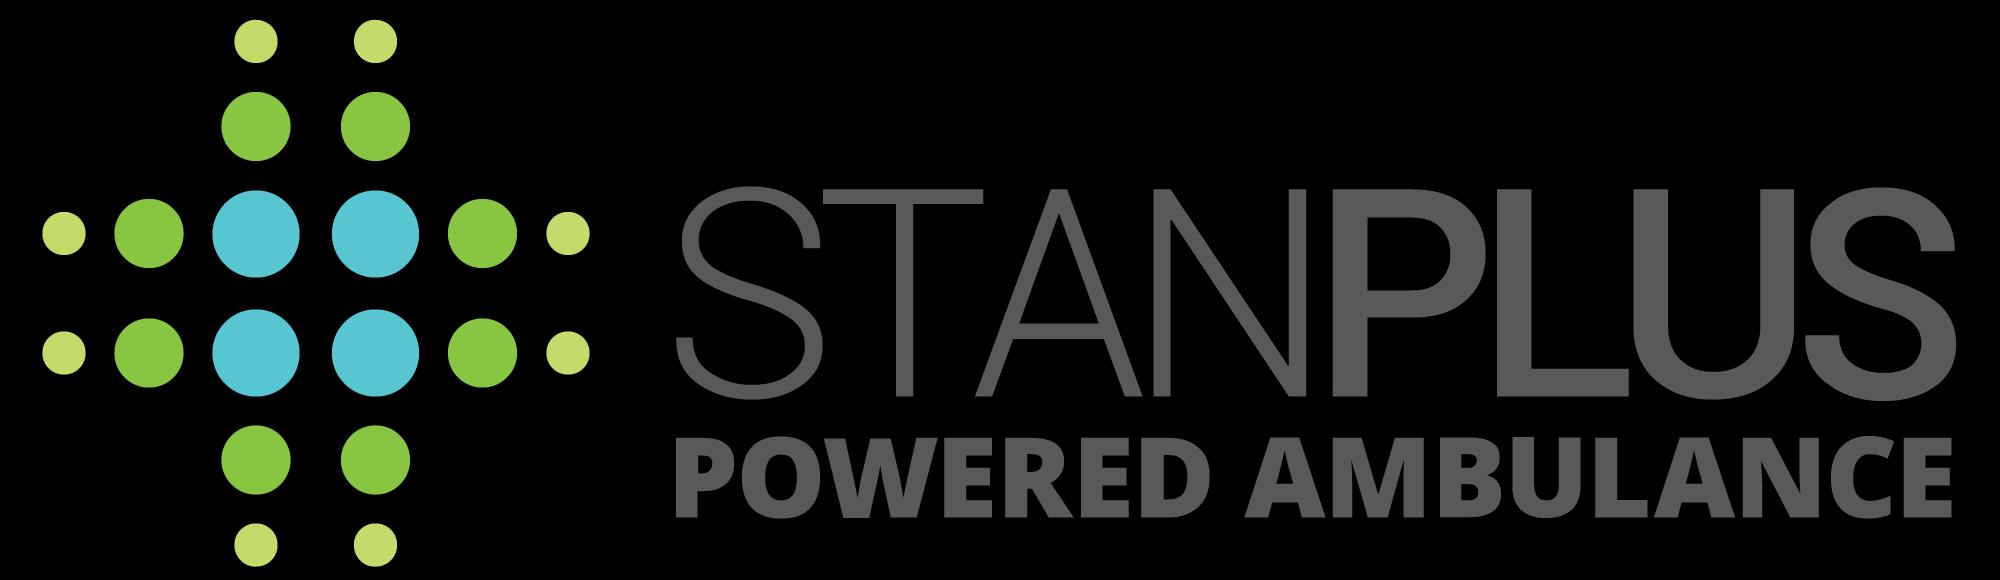 StanPlus_logo